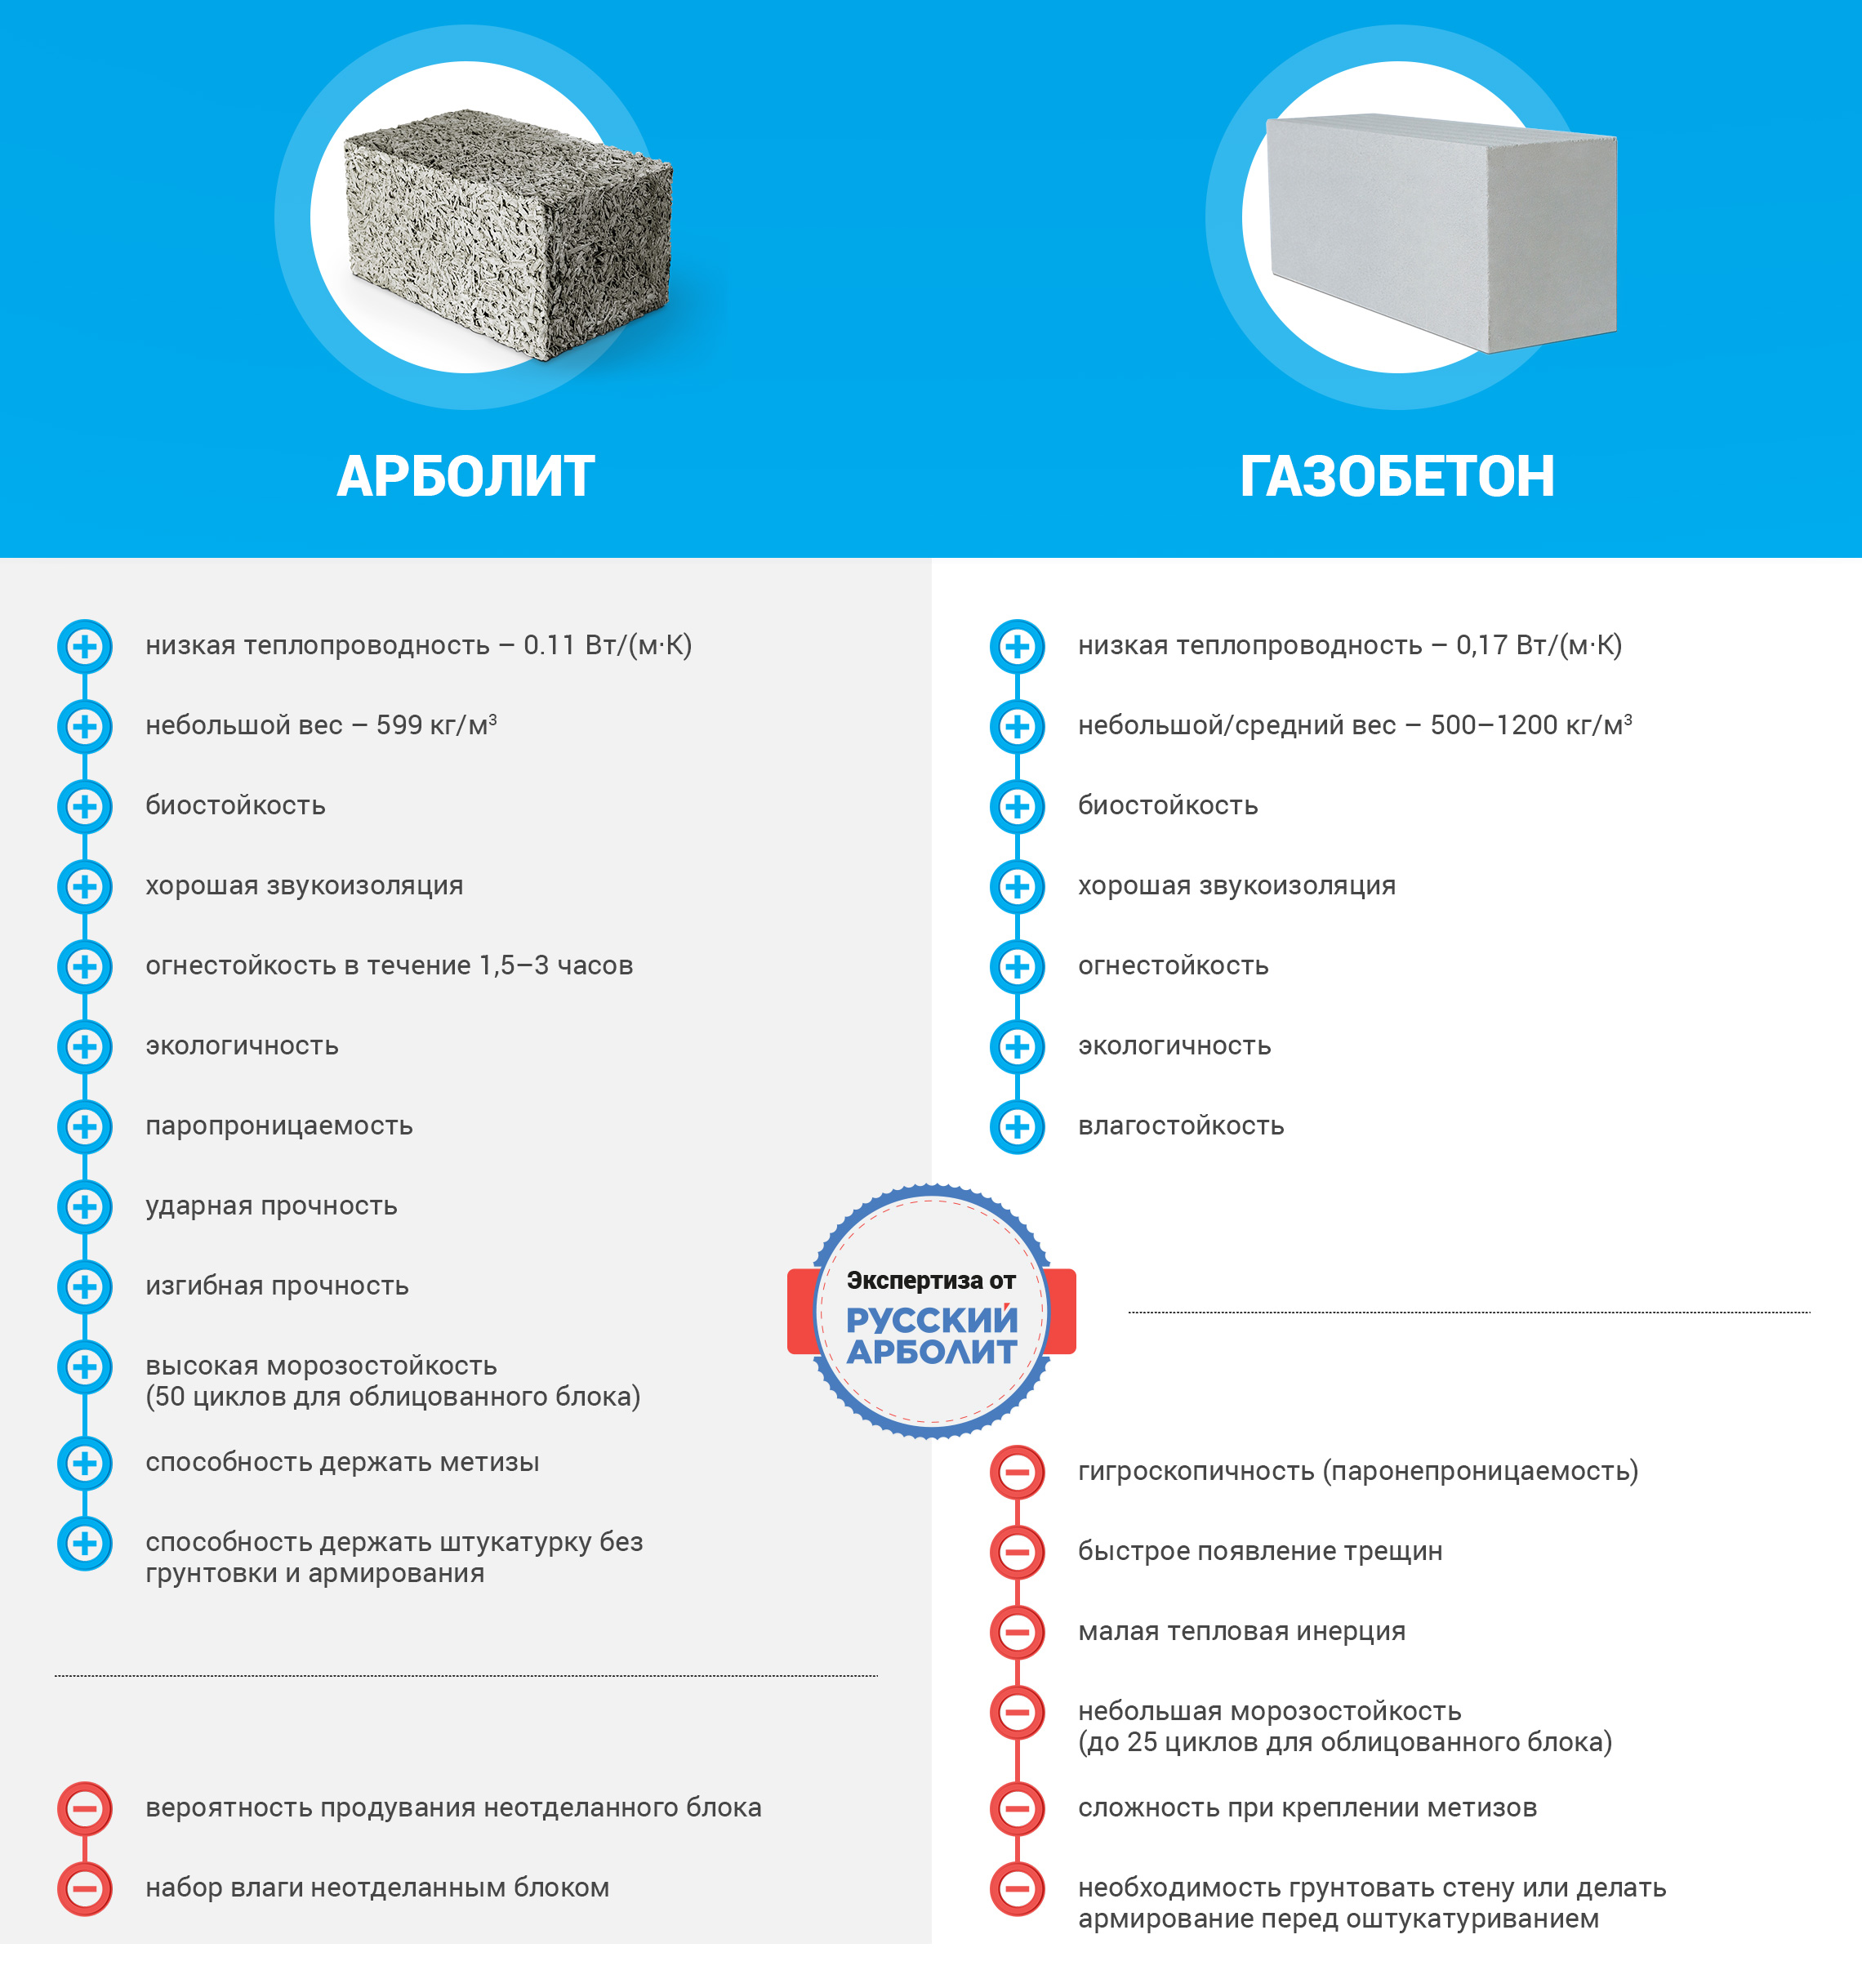 инфографика от русского арболита